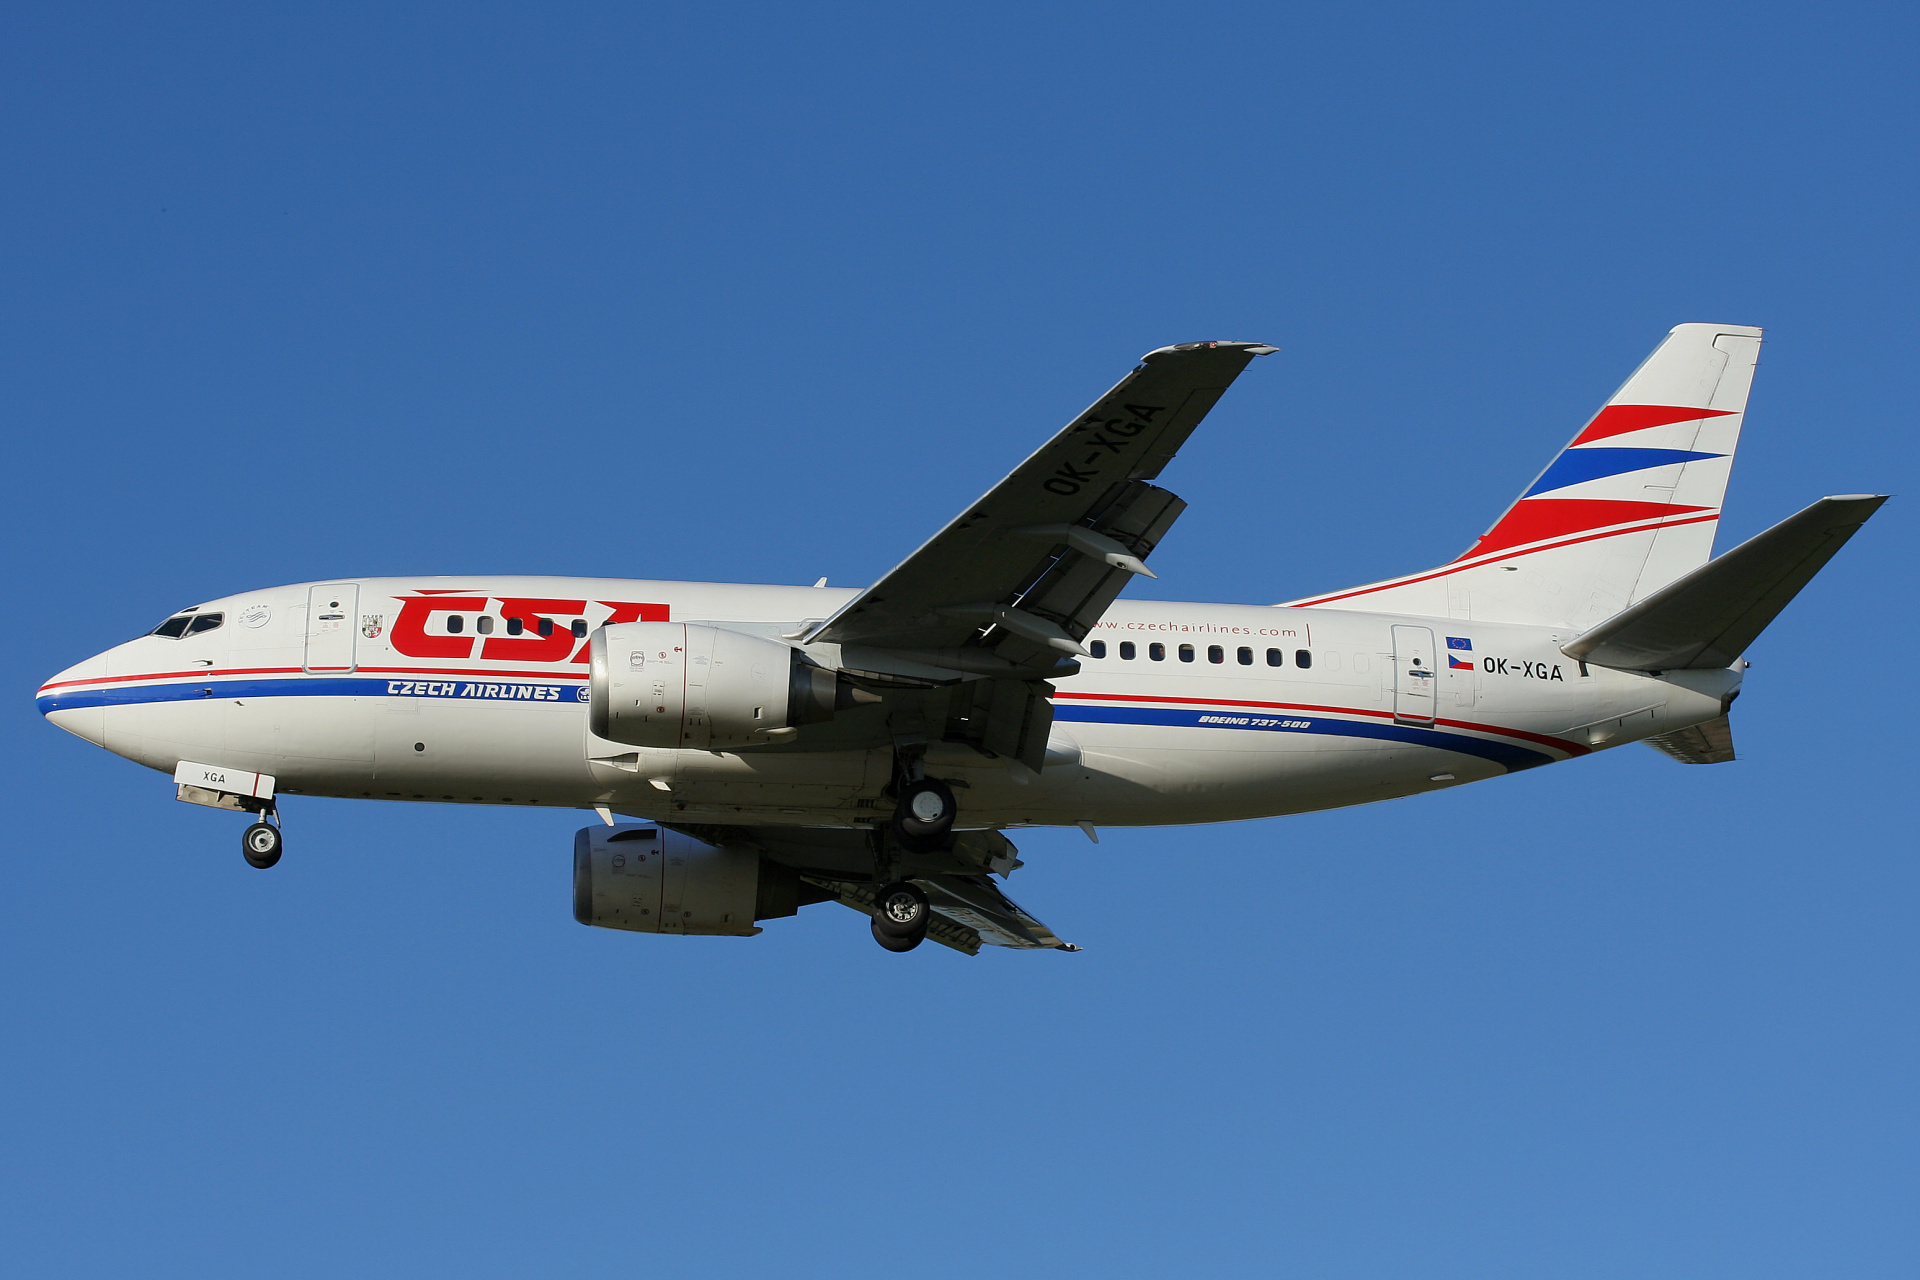 OK-XGA (Aircraft » EPWA Spotting » Boeing 737-500 » CSA Czech Airlines)